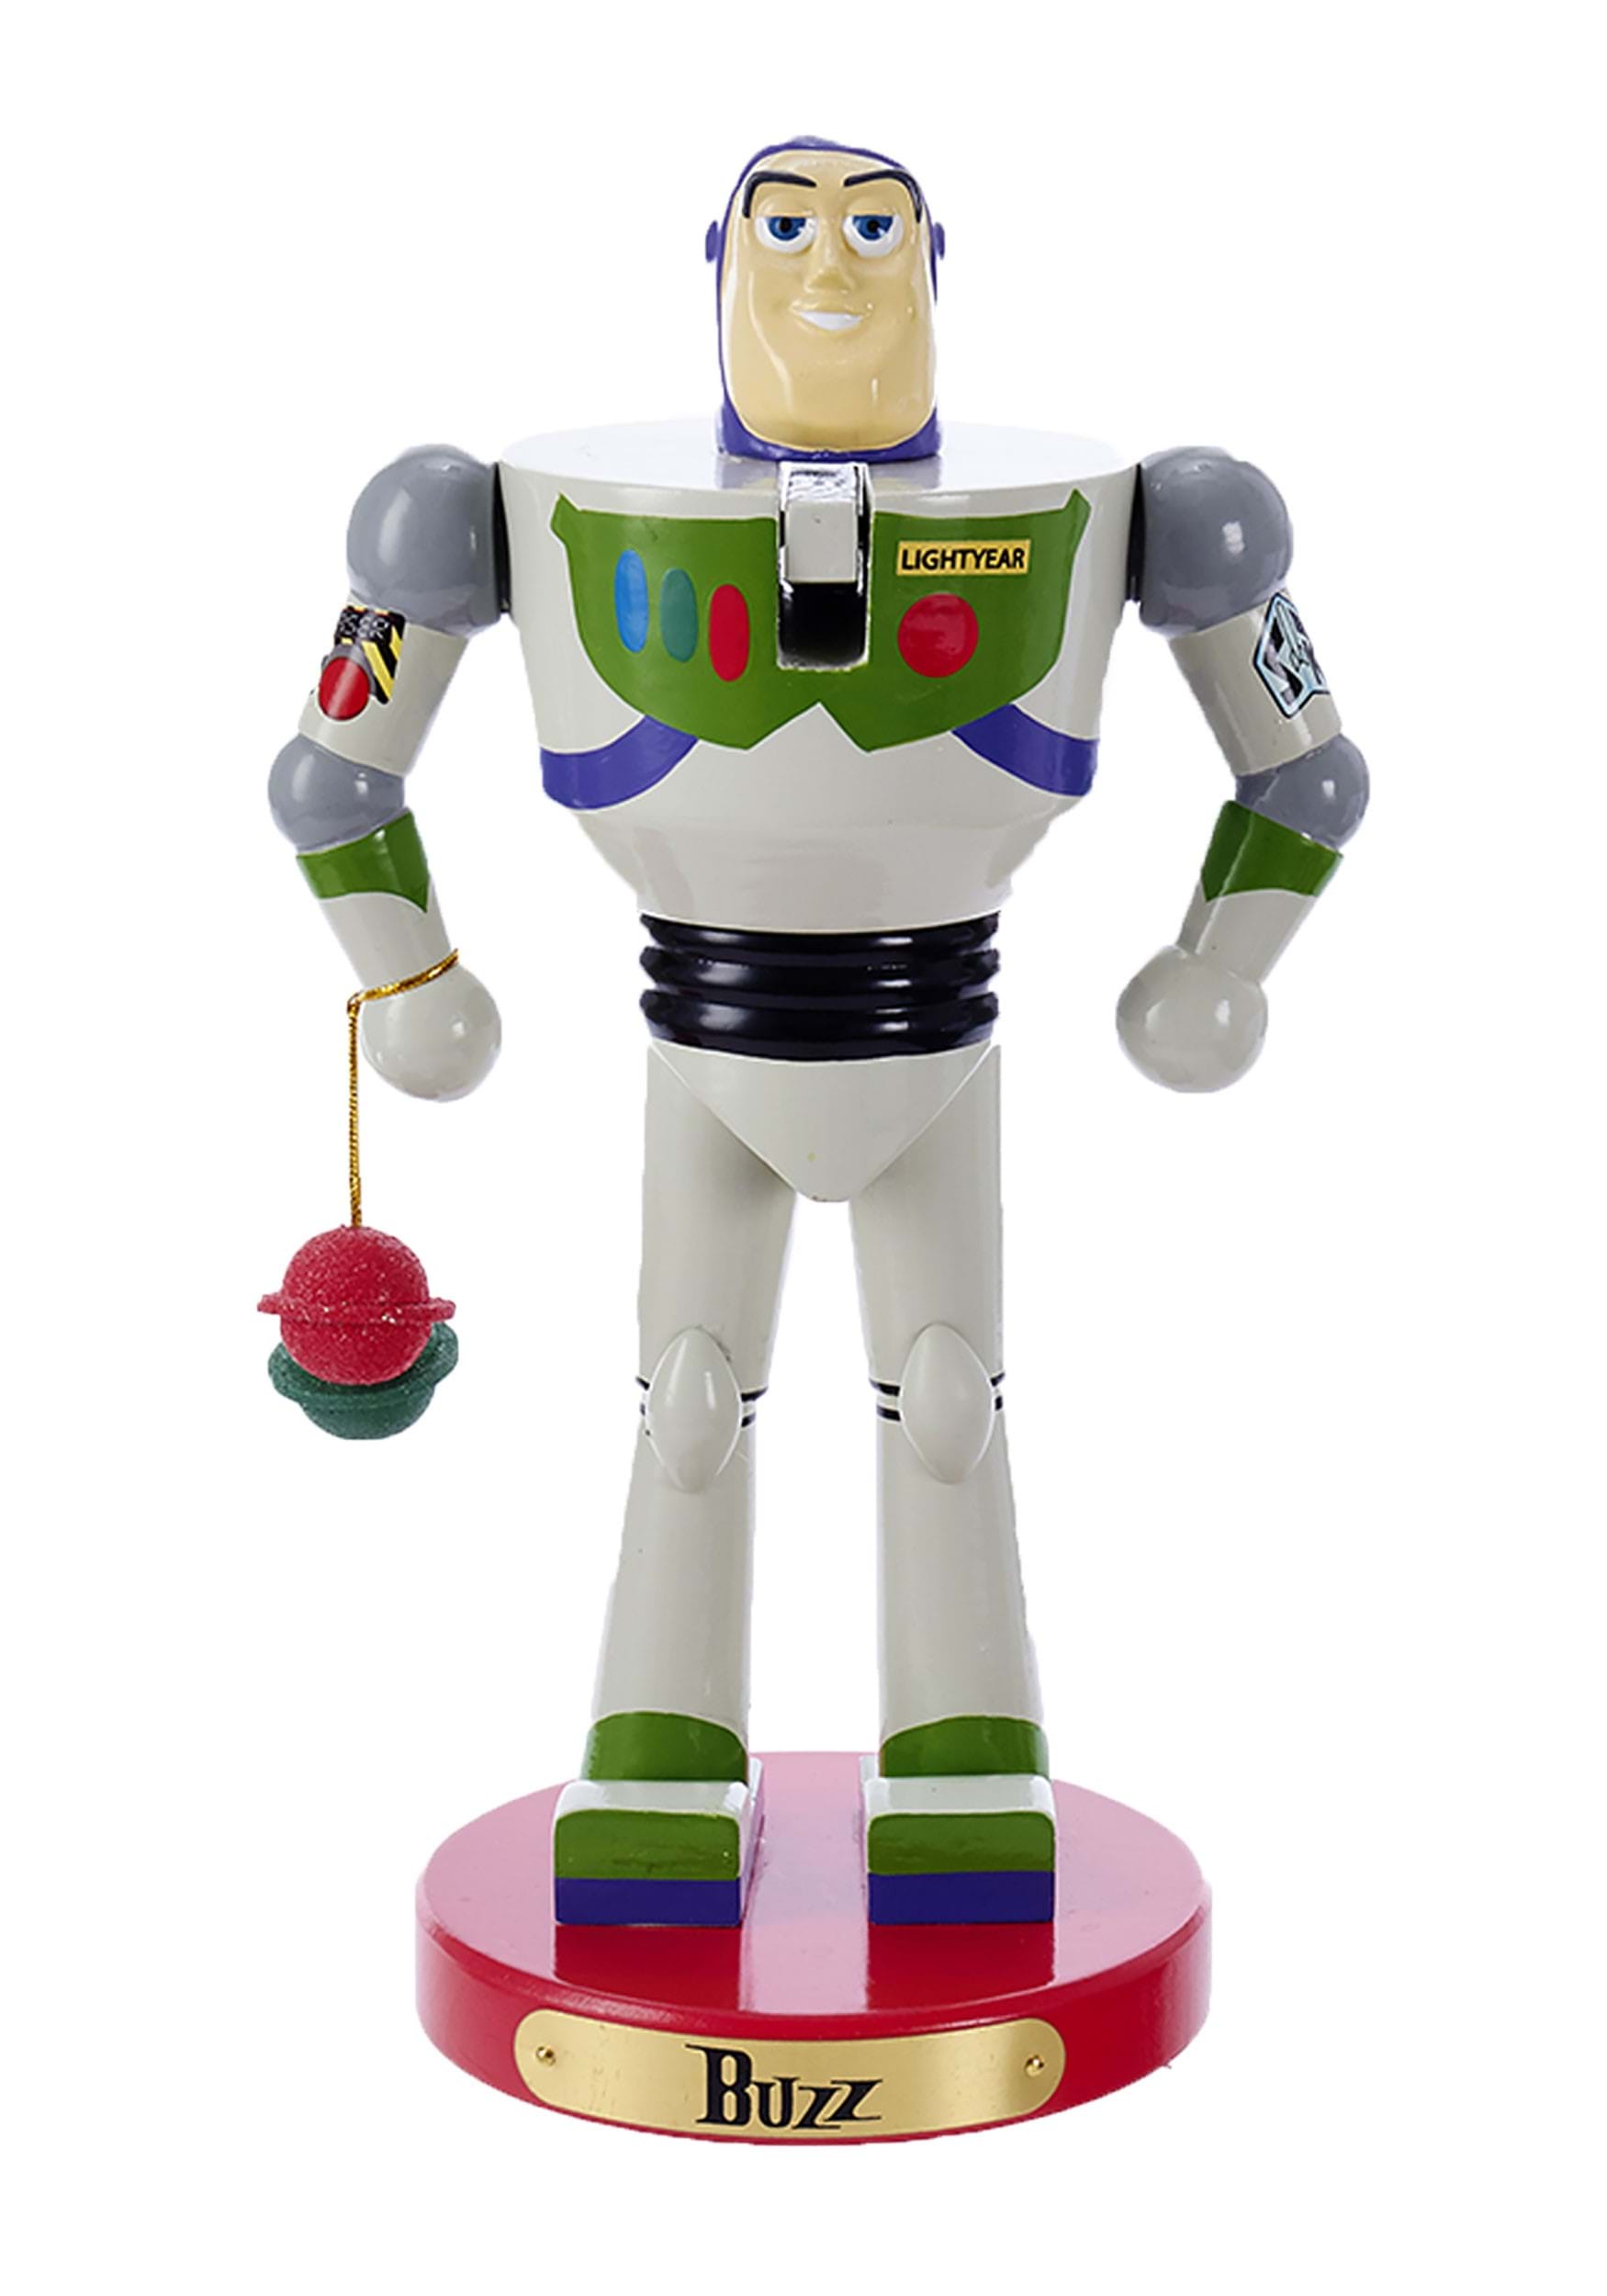 11-Inch Buzz Lightyear Nutcracker from Toy Story